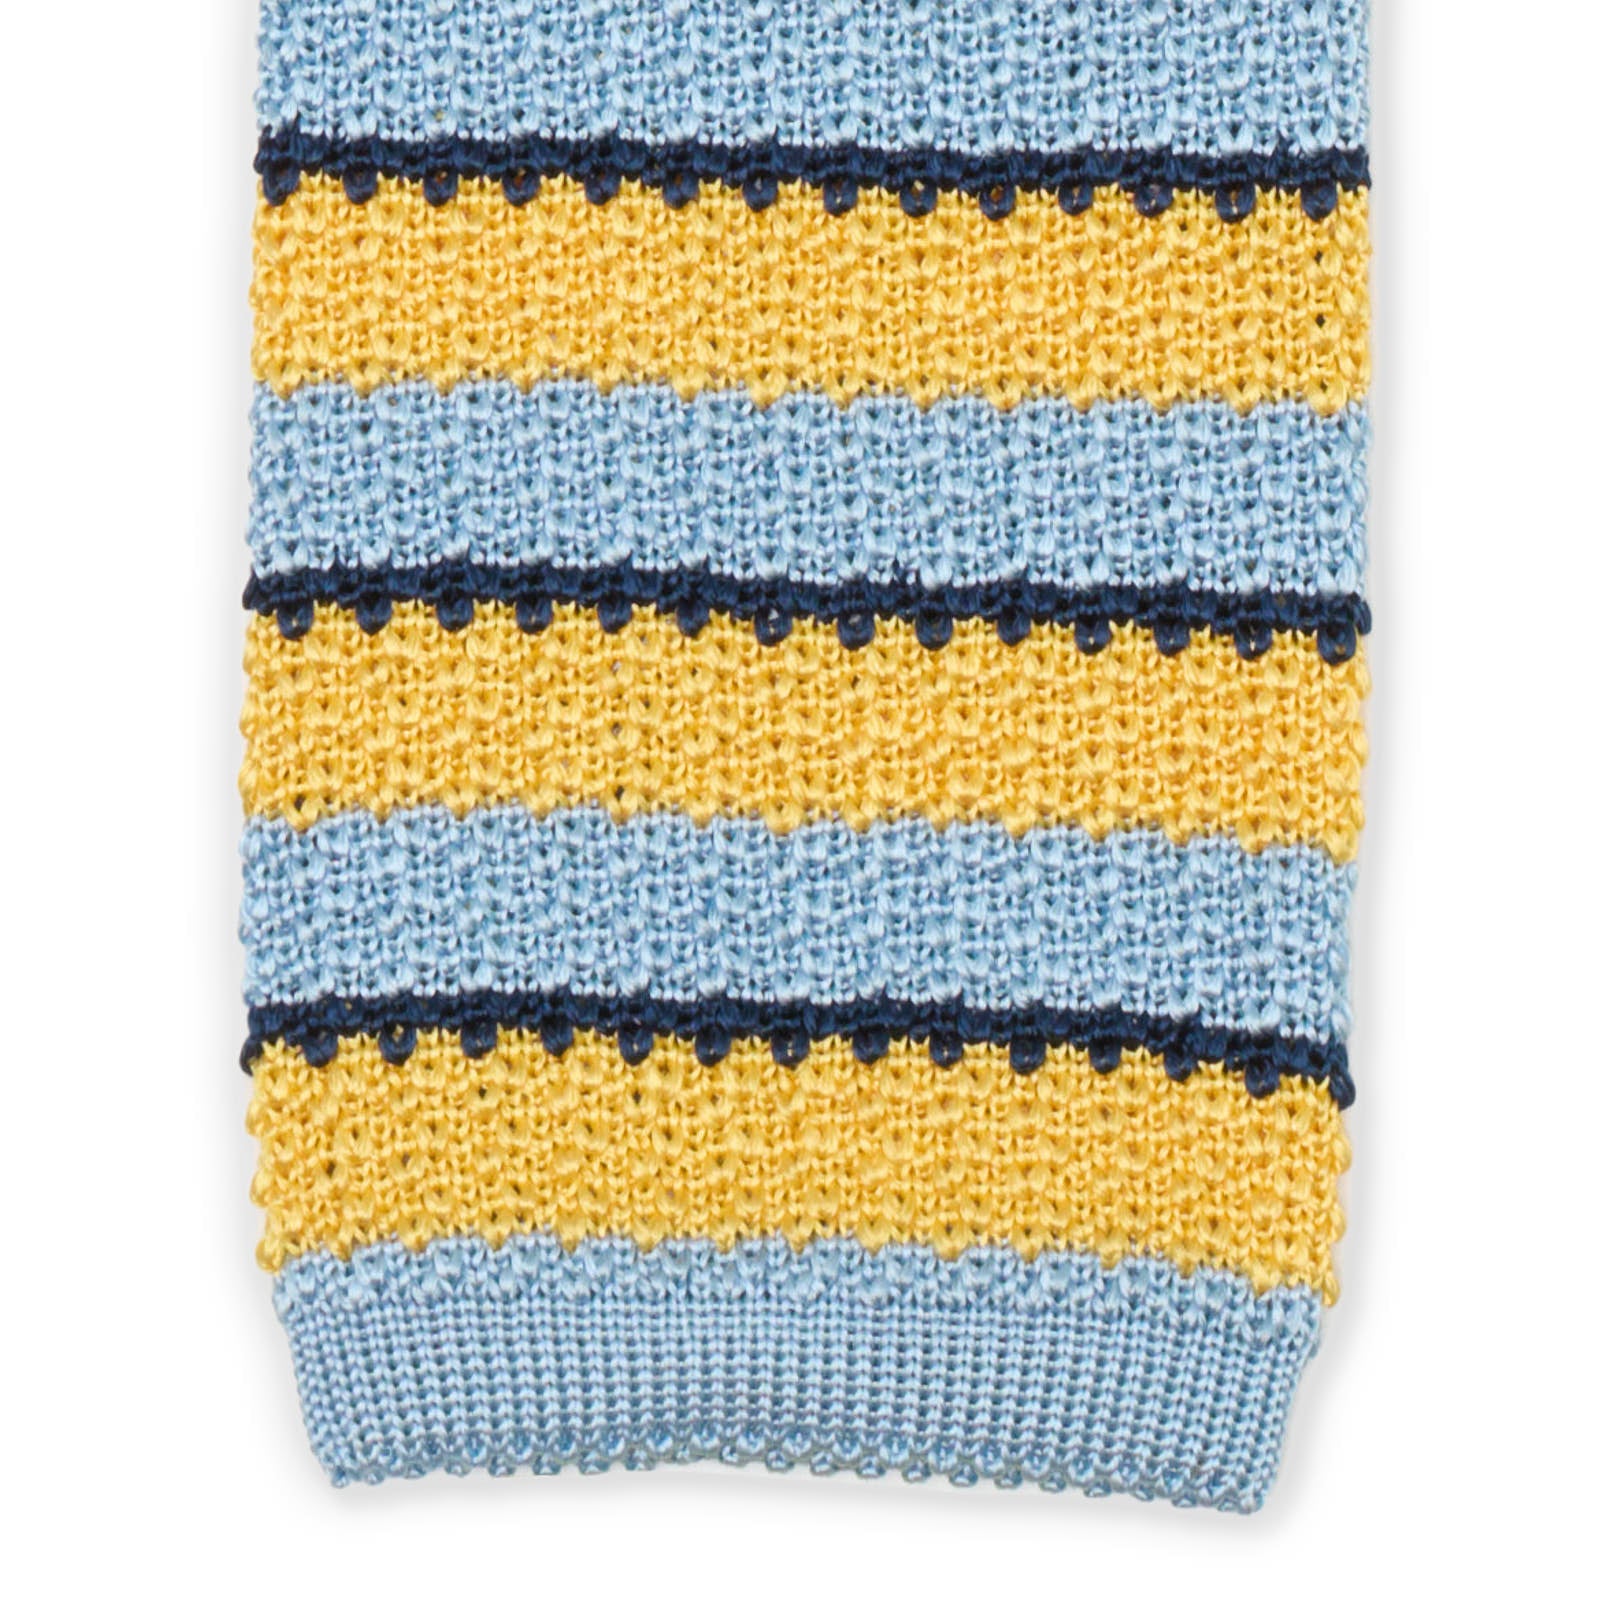 MATTABISCH Blue-Yellow Striped Silk Knit Tie NEW